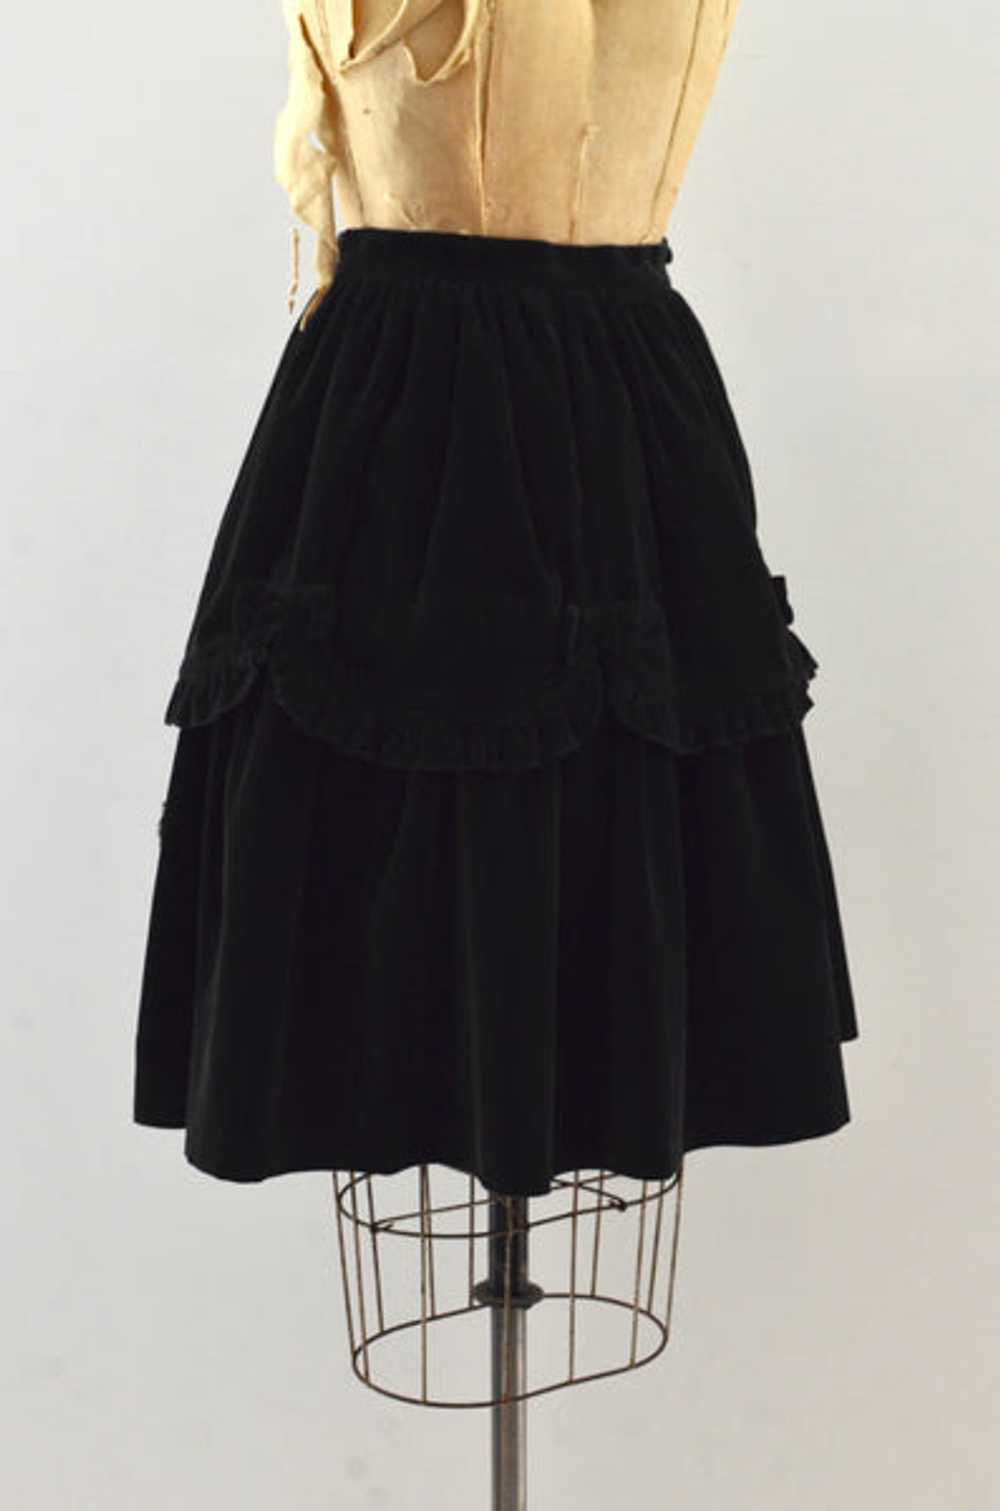 Vintage Poodle Velvet Skirt - image 4